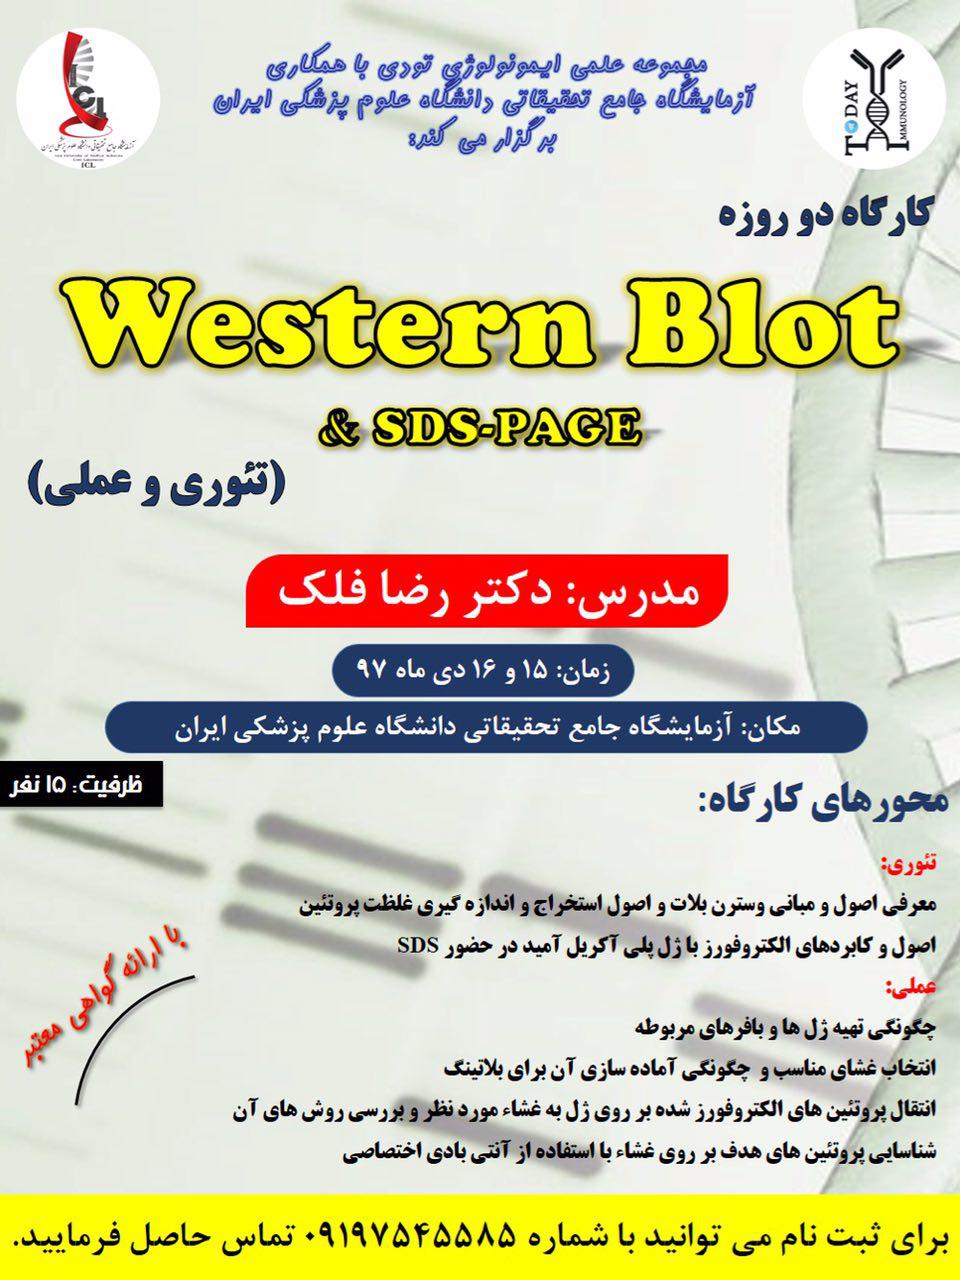 کارگاه  Western Blot & SDS-PAGE